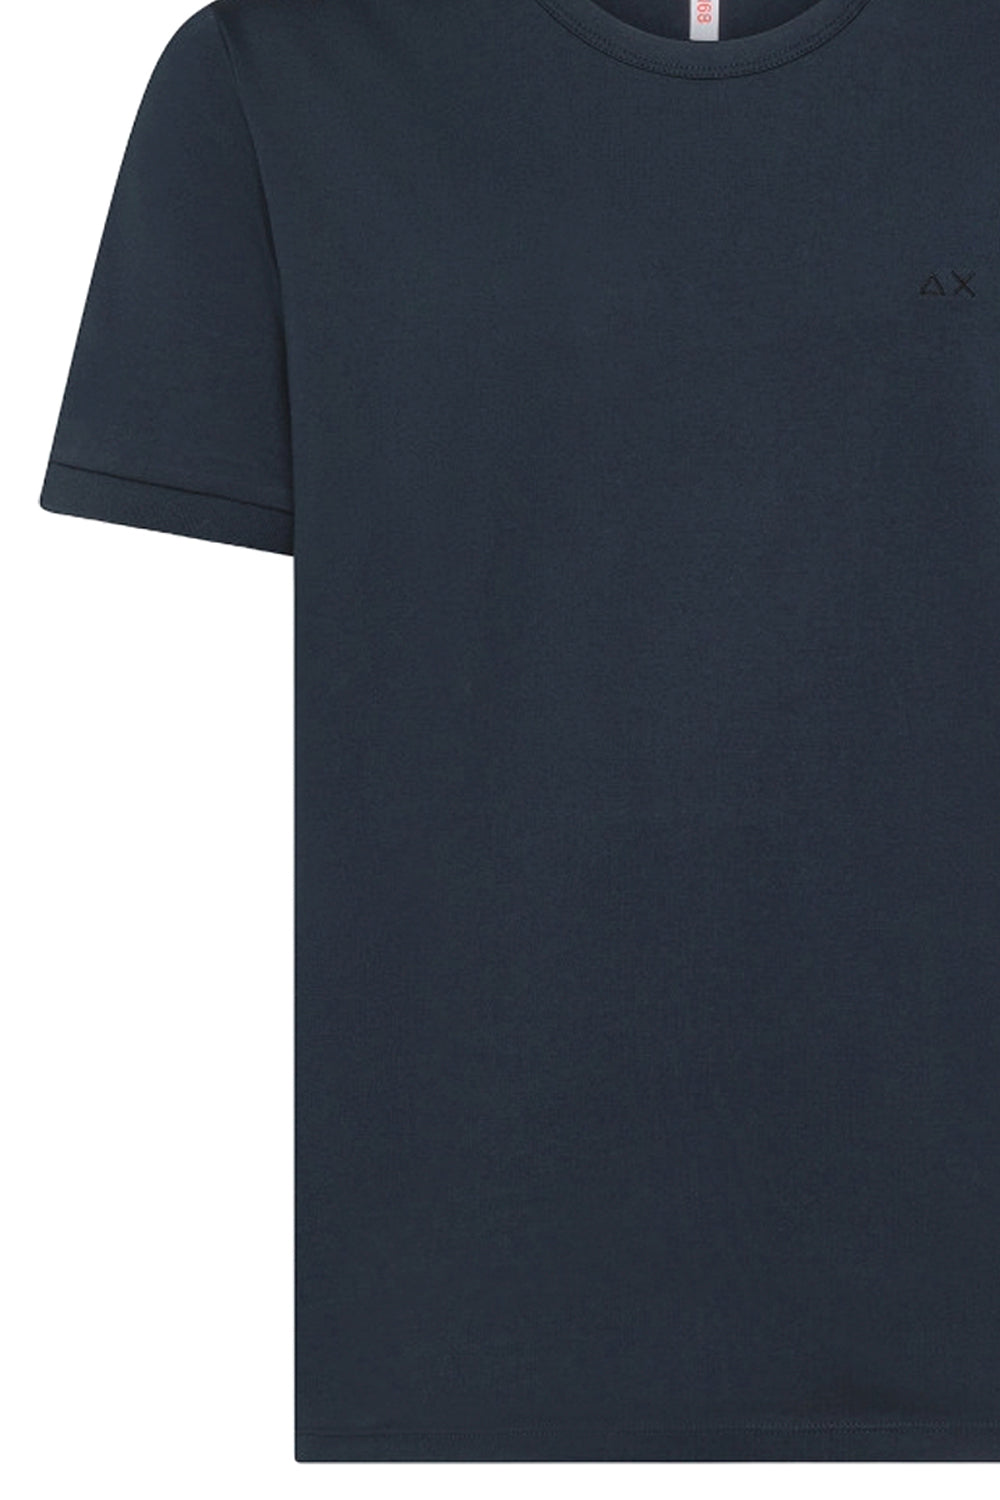 SUN 68 T-shirt in cotone